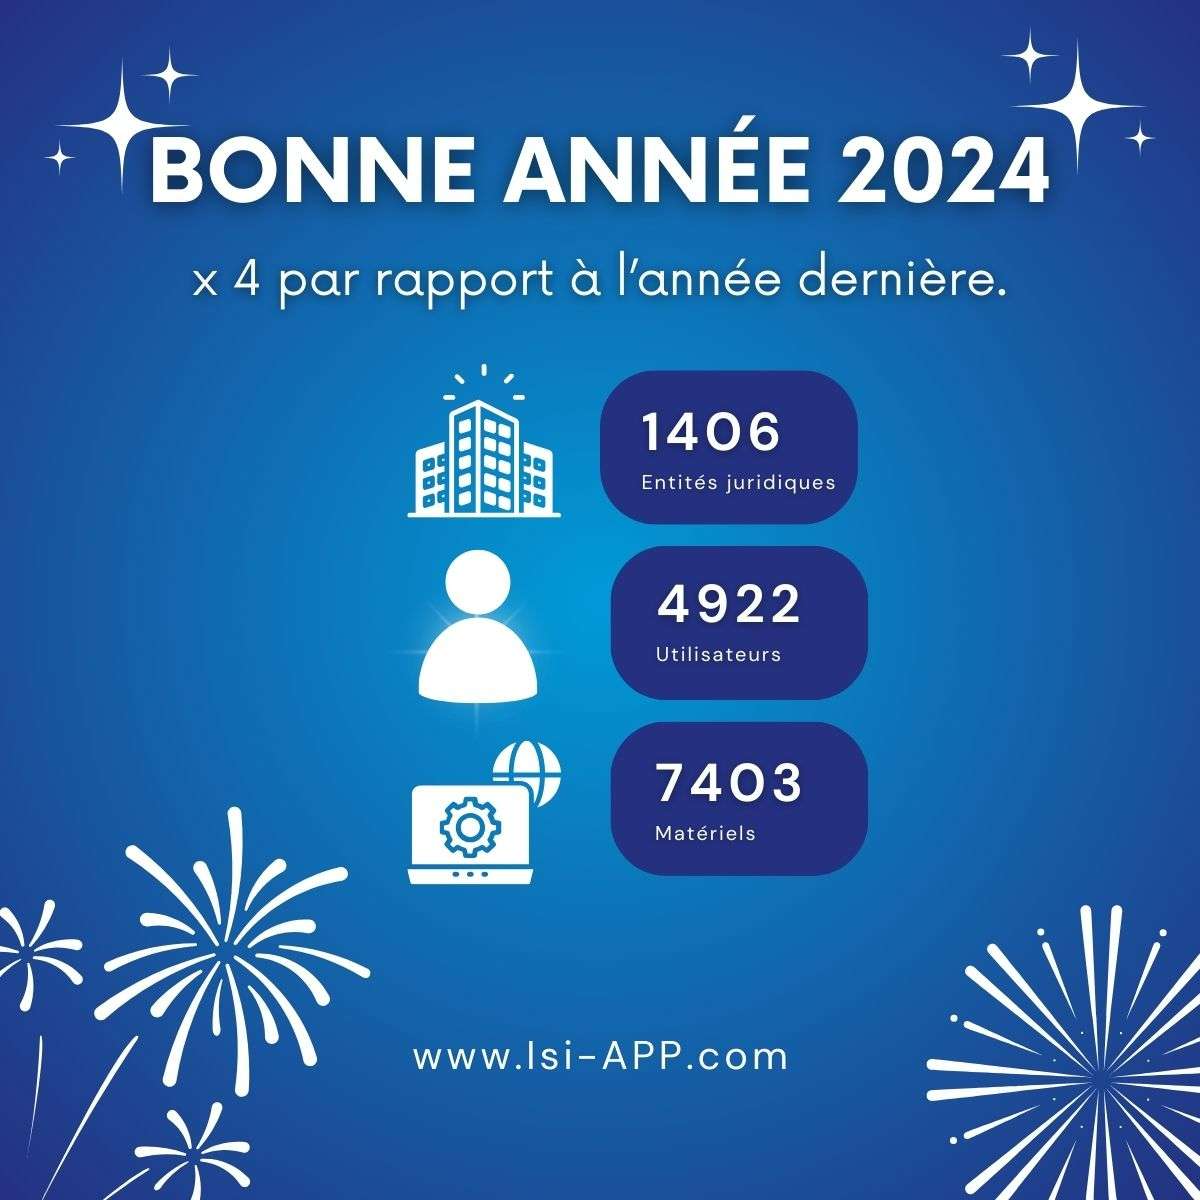 BONNE ANNÉE 2024 !